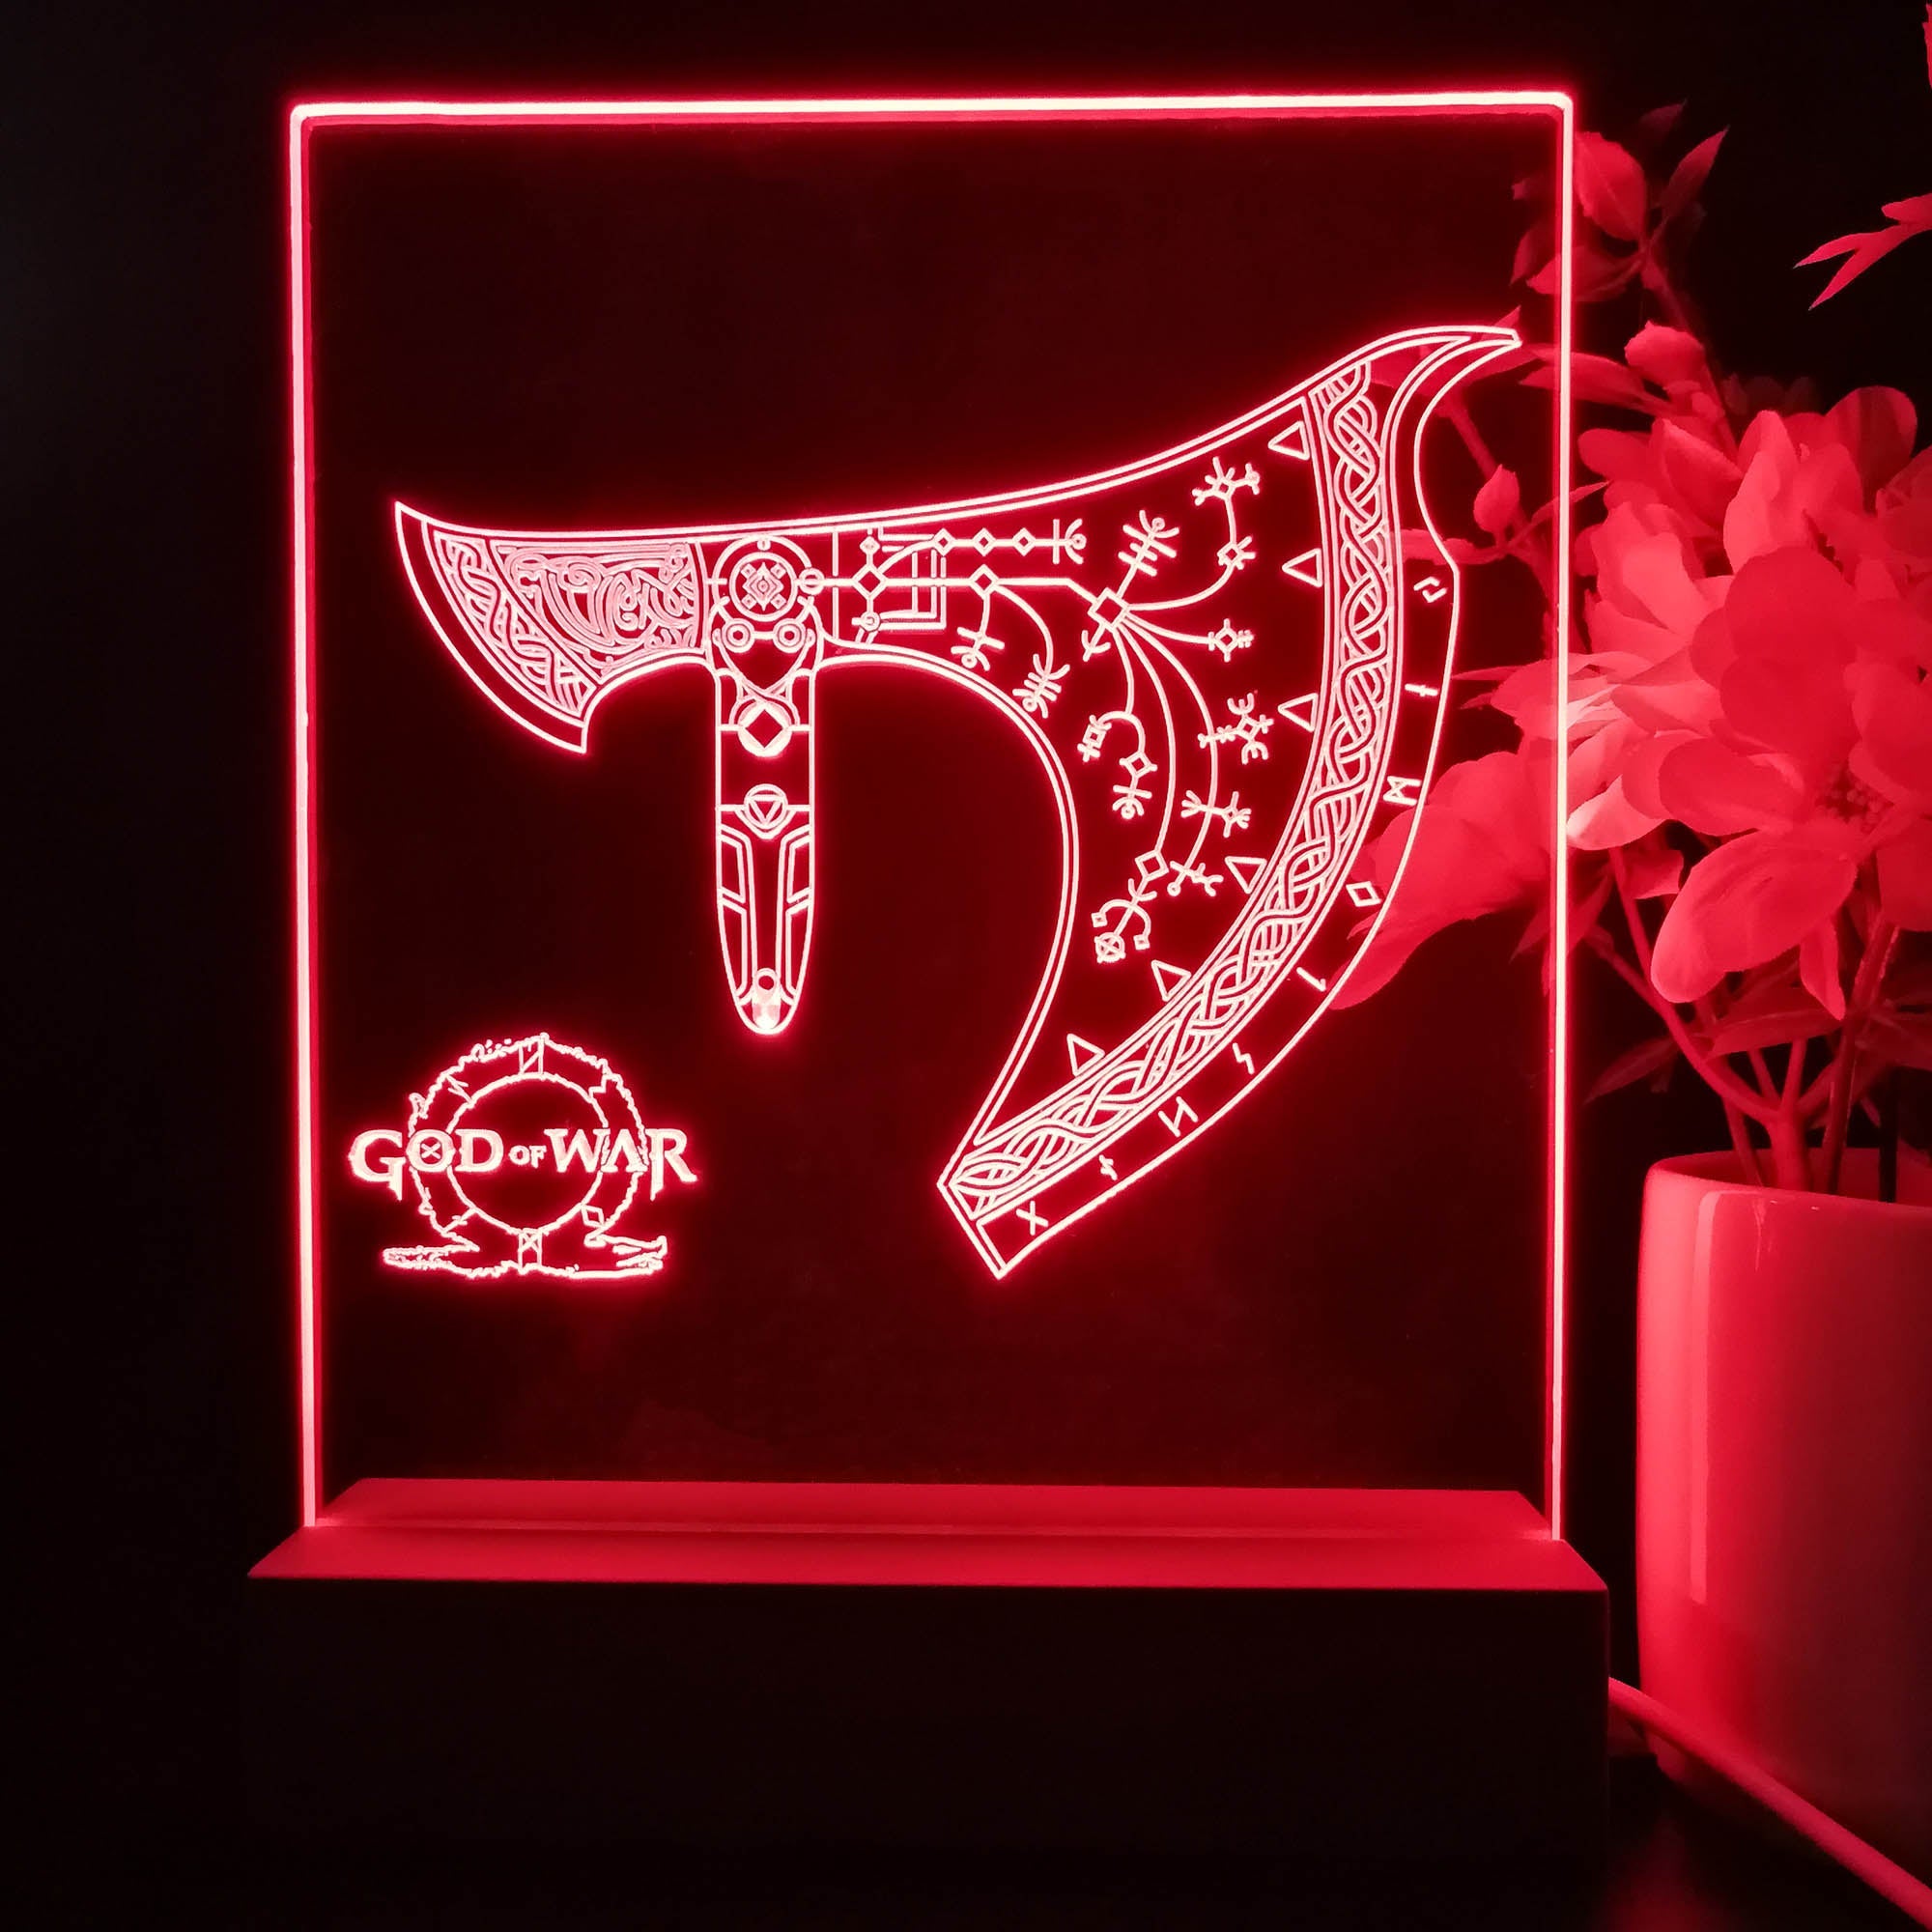 God of War Game Room LED Sign Lamp Display